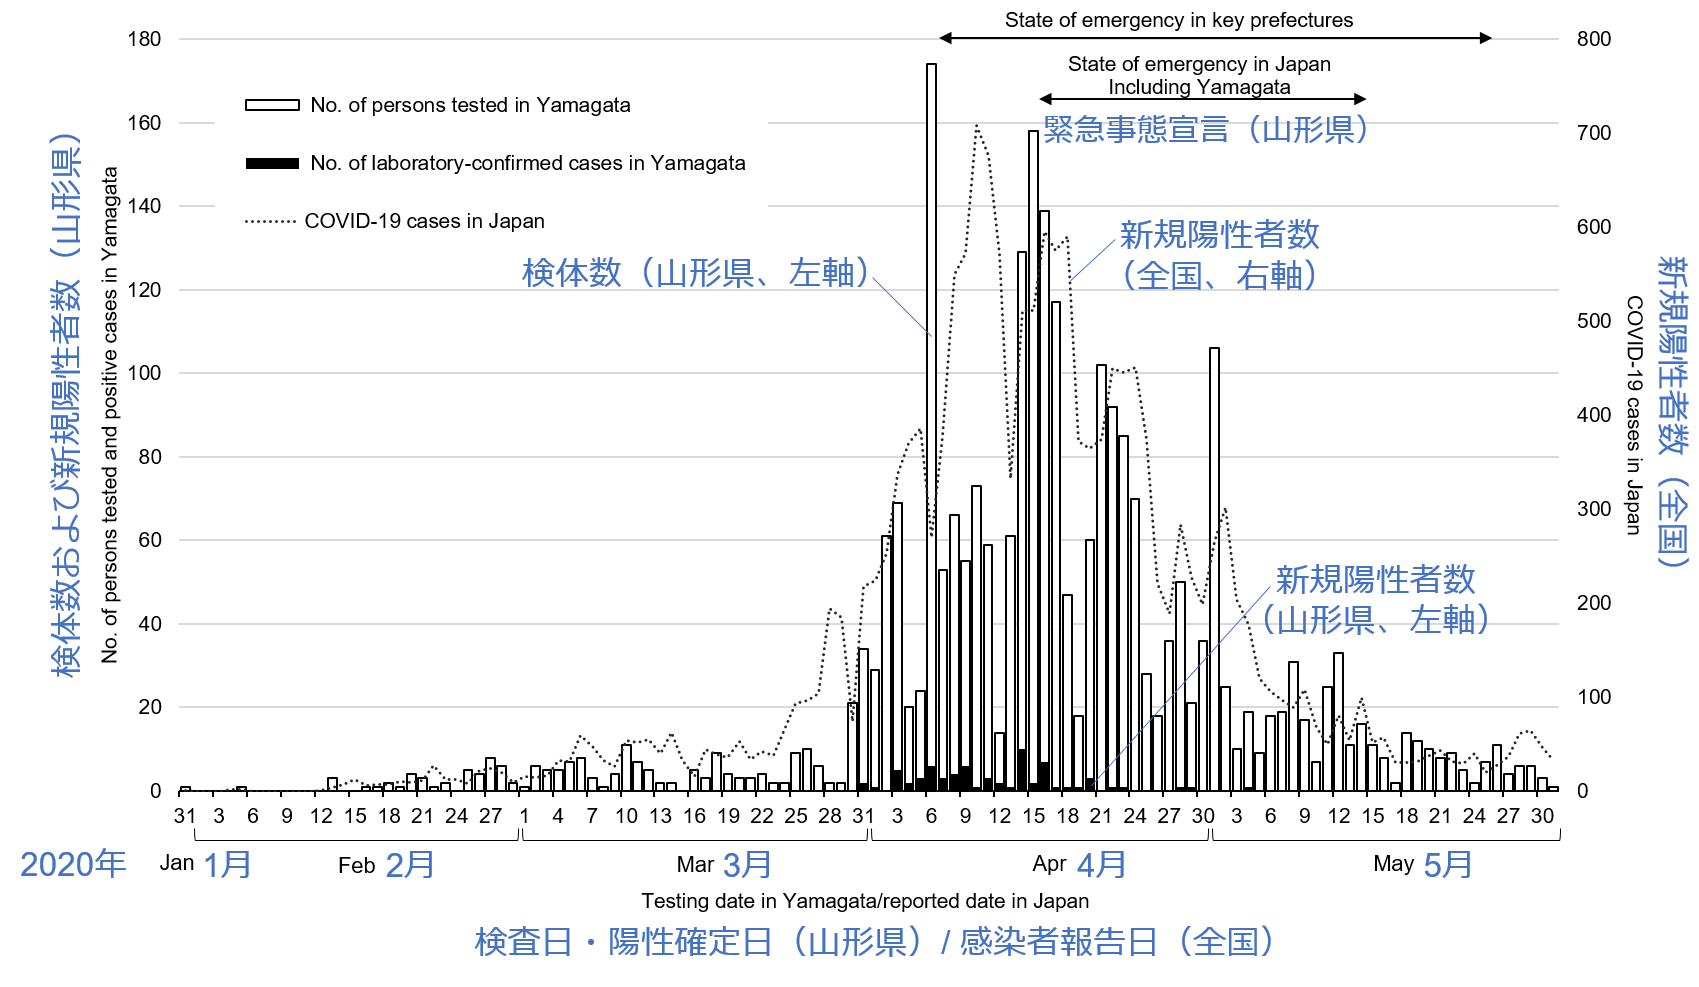 山形県における2020年1月から5月の新型コロナウイルス感染症検査数および陽性者数